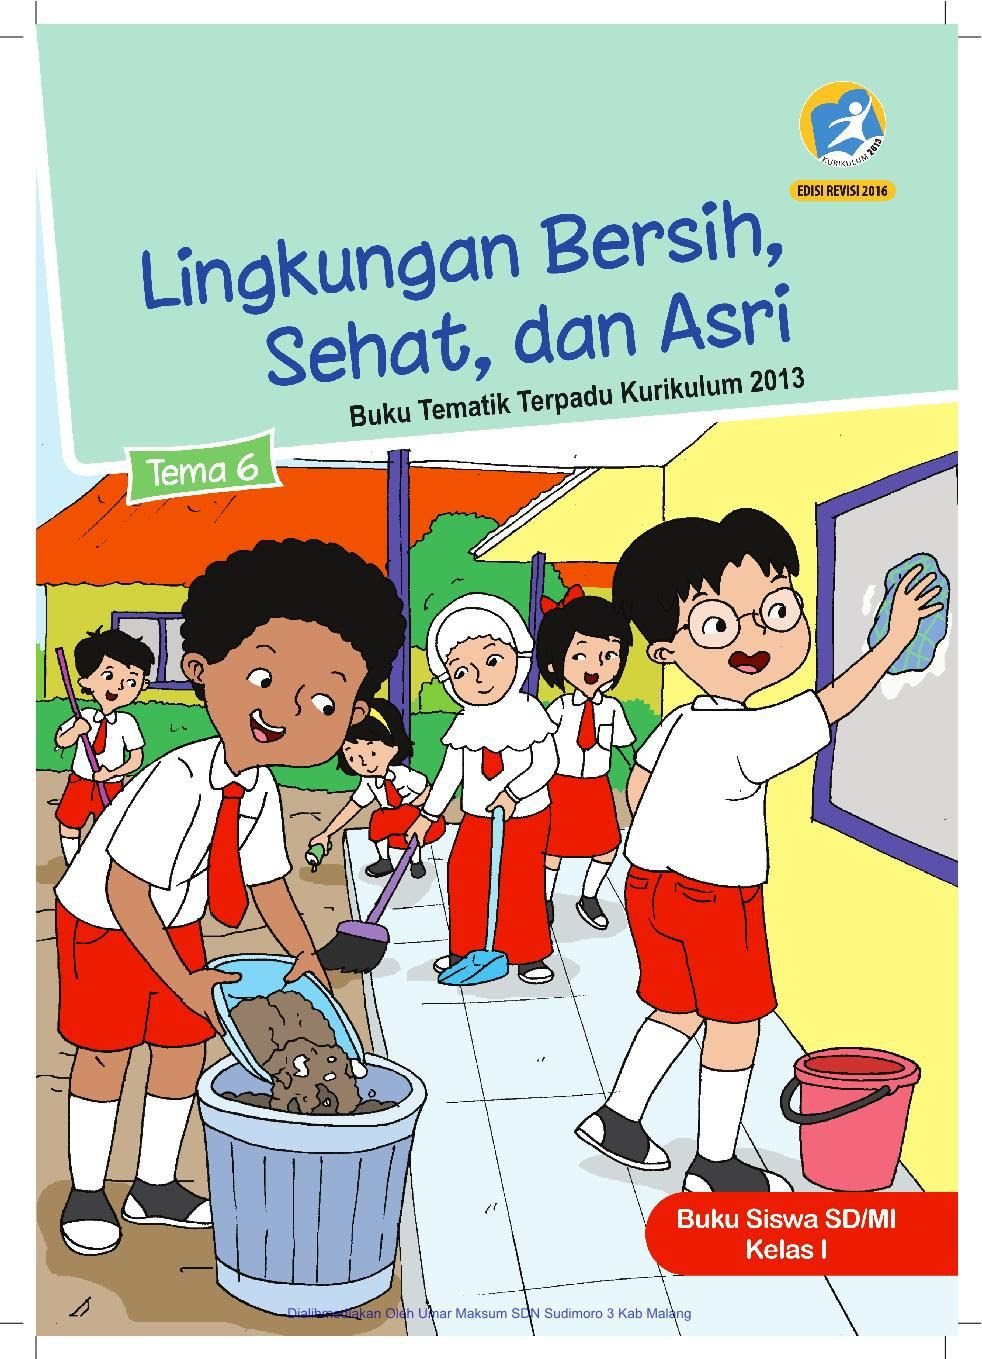 52 Contoh Gambar Ilustrasi Kebersihan Sekolah Gambarilus